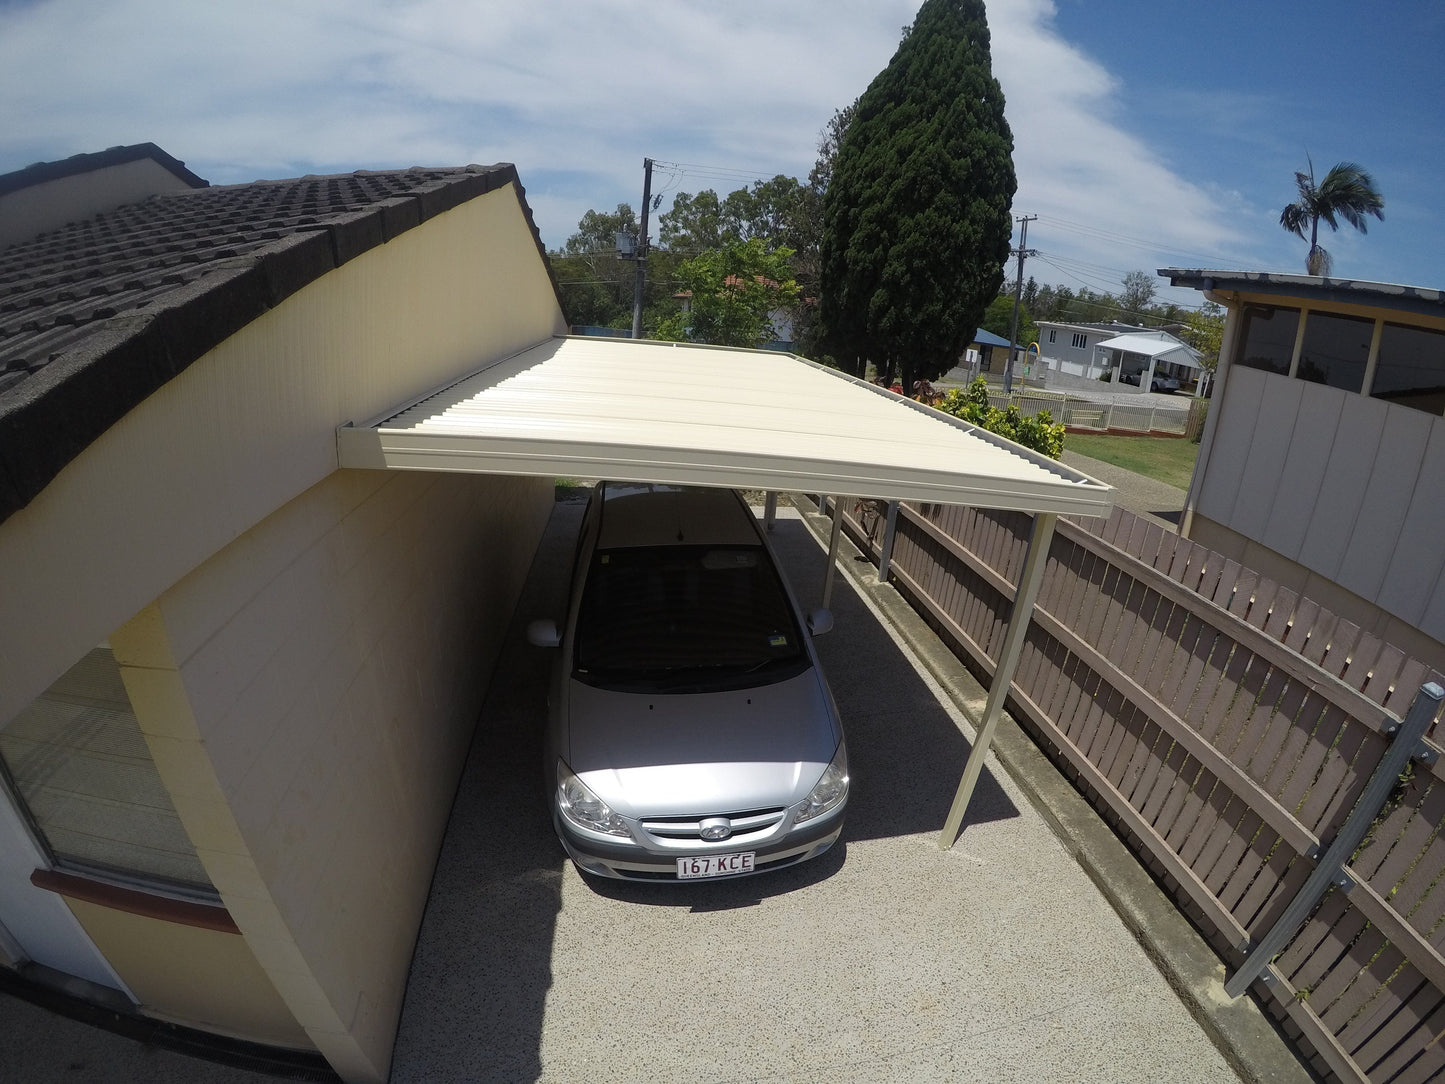 SmartKits Australia Flat Roof Carport- 12m (L) x 6m (W).